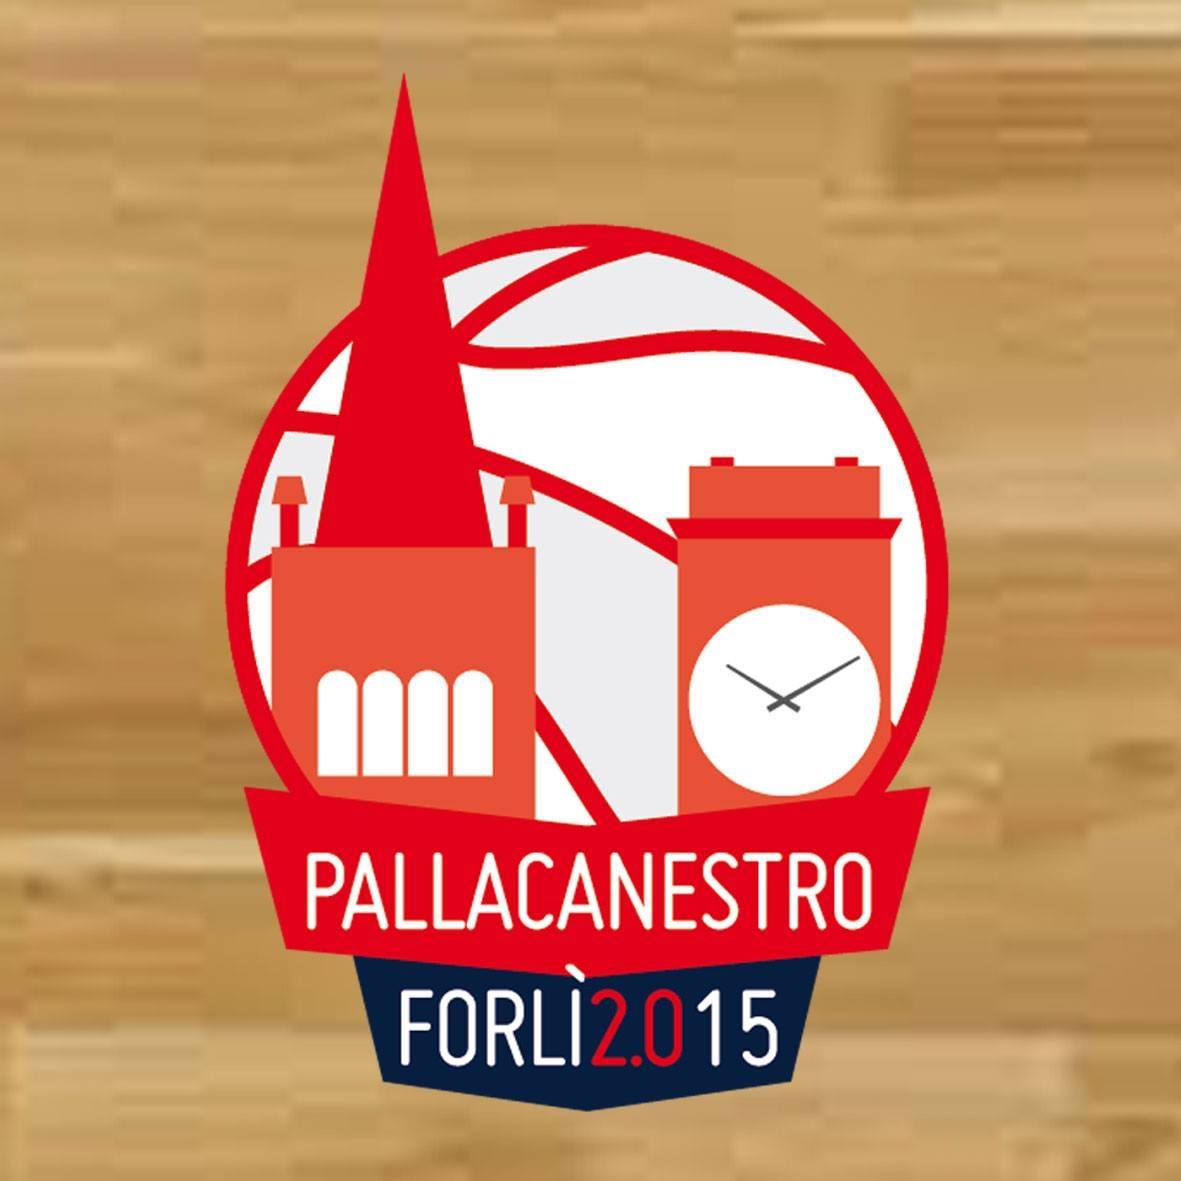 Pallacanestro Forlì 2.015, il presidente Nicosanti: “Chiediamo di spostare l’inizio del campionato”